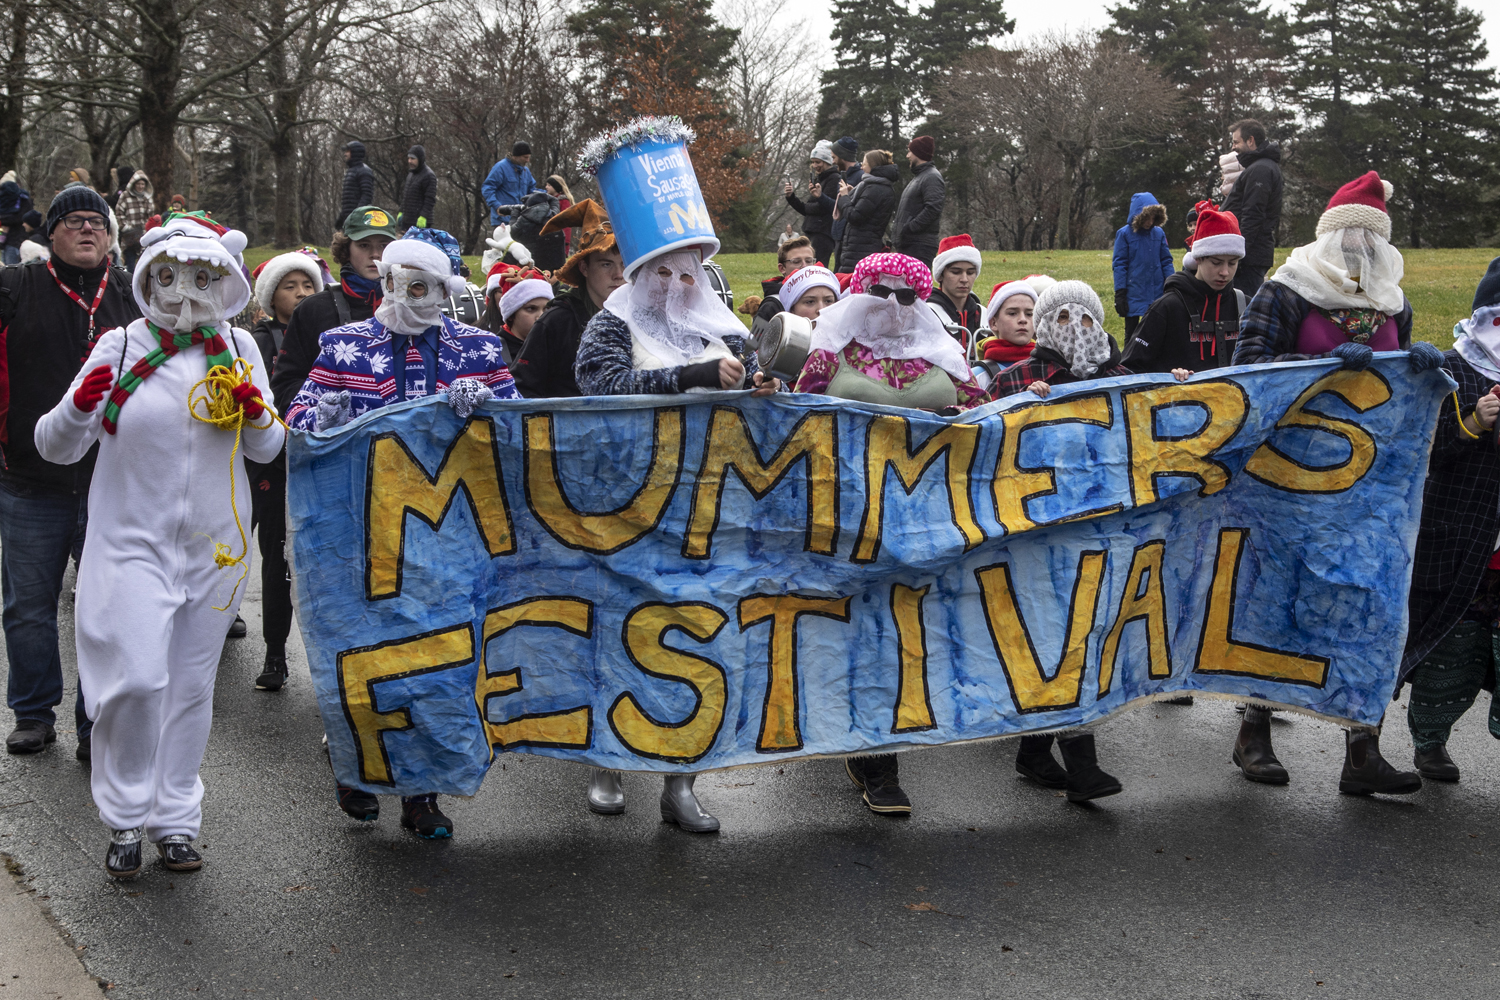 Un groupe de personnes déguiser en mummers marchent dans une rue et tienne une bannière bleue avec les mots jaunes «Mummers festival».